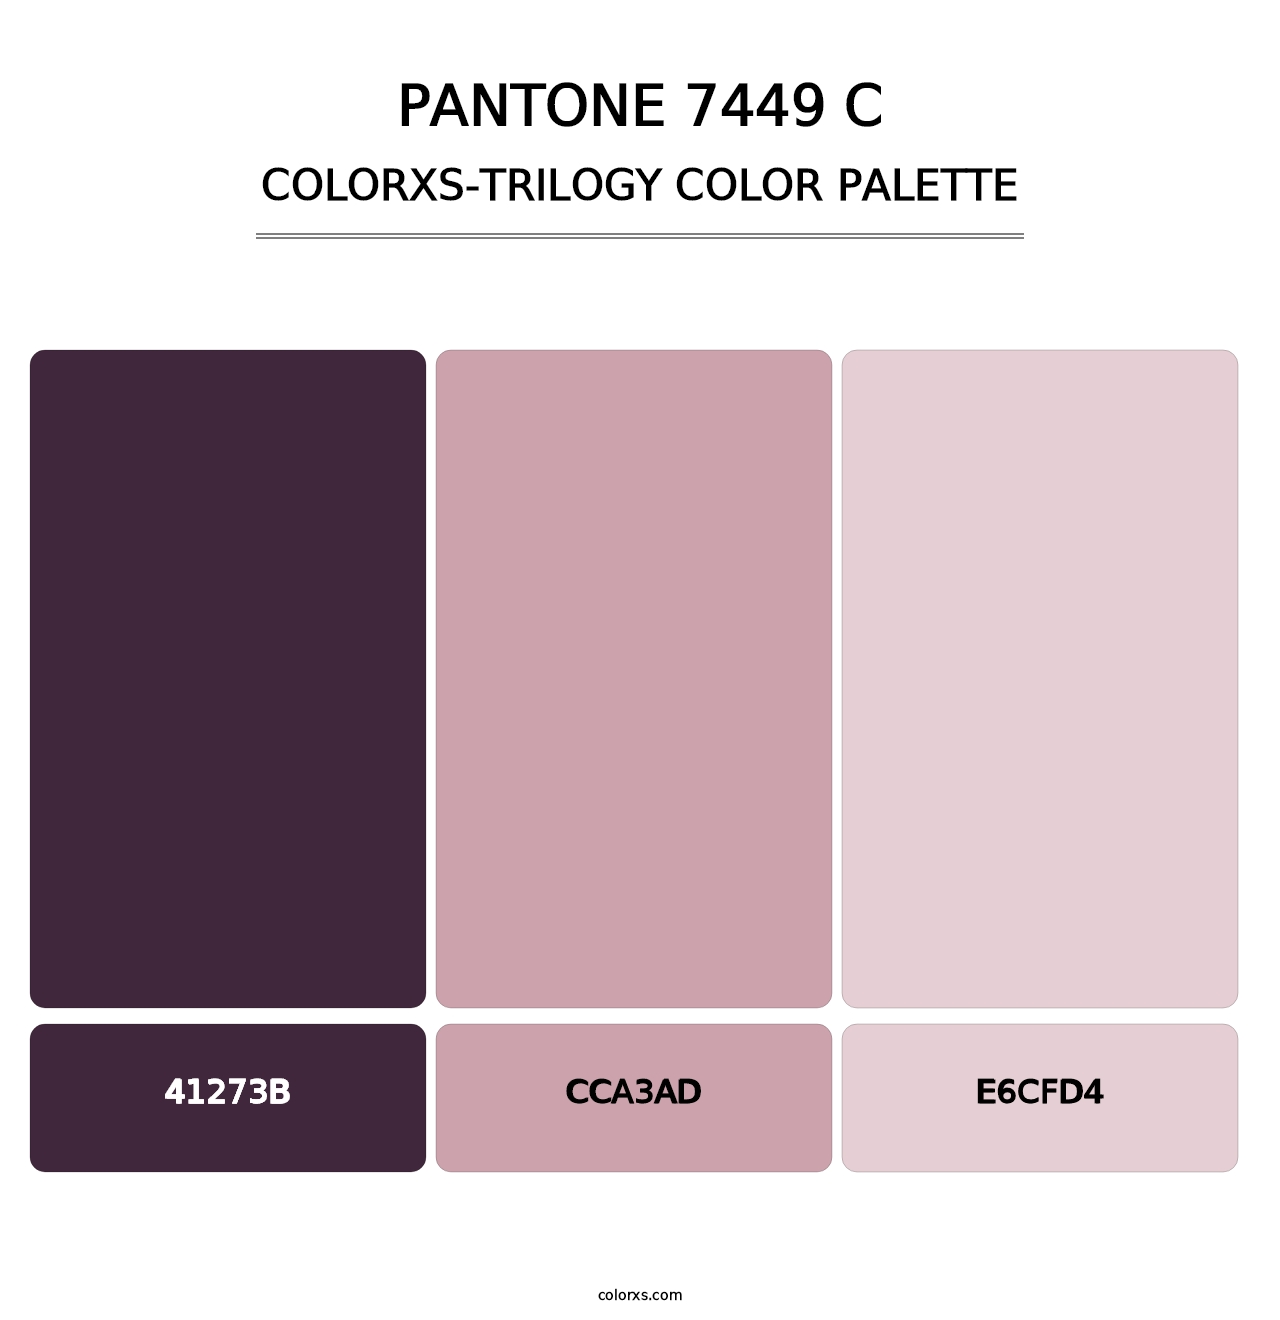 PANTONE 7449 C - Colorxs Trilogy Palette